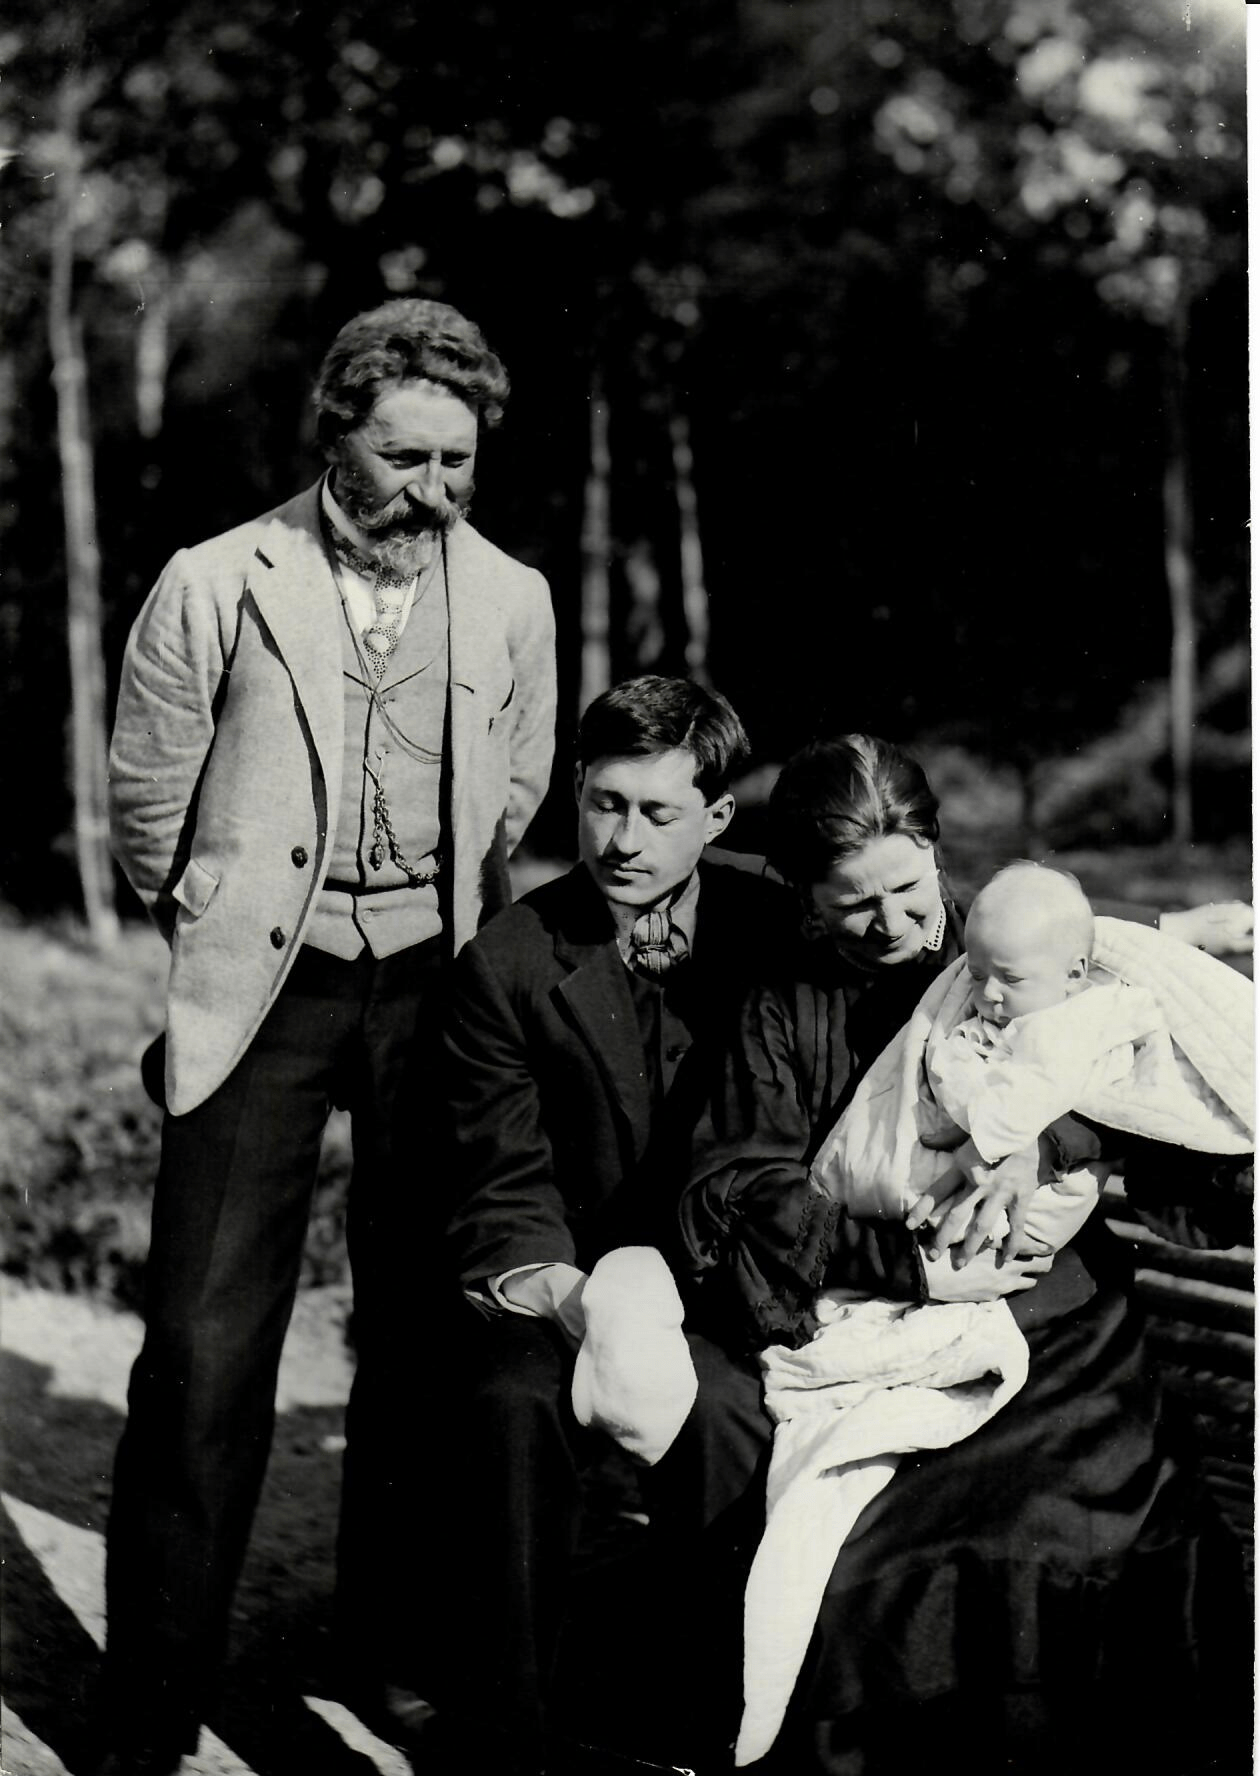 <strong>Фотография Н. Б. Нордман</strong><br /><p>И. Е. Репин и Ю. И. Репин с женой и сыном Гаем на скамейке в Пенатах</p>
<p>1906</p>
<p>Научно-исследовательский музей при Российской академии художеств</p>
